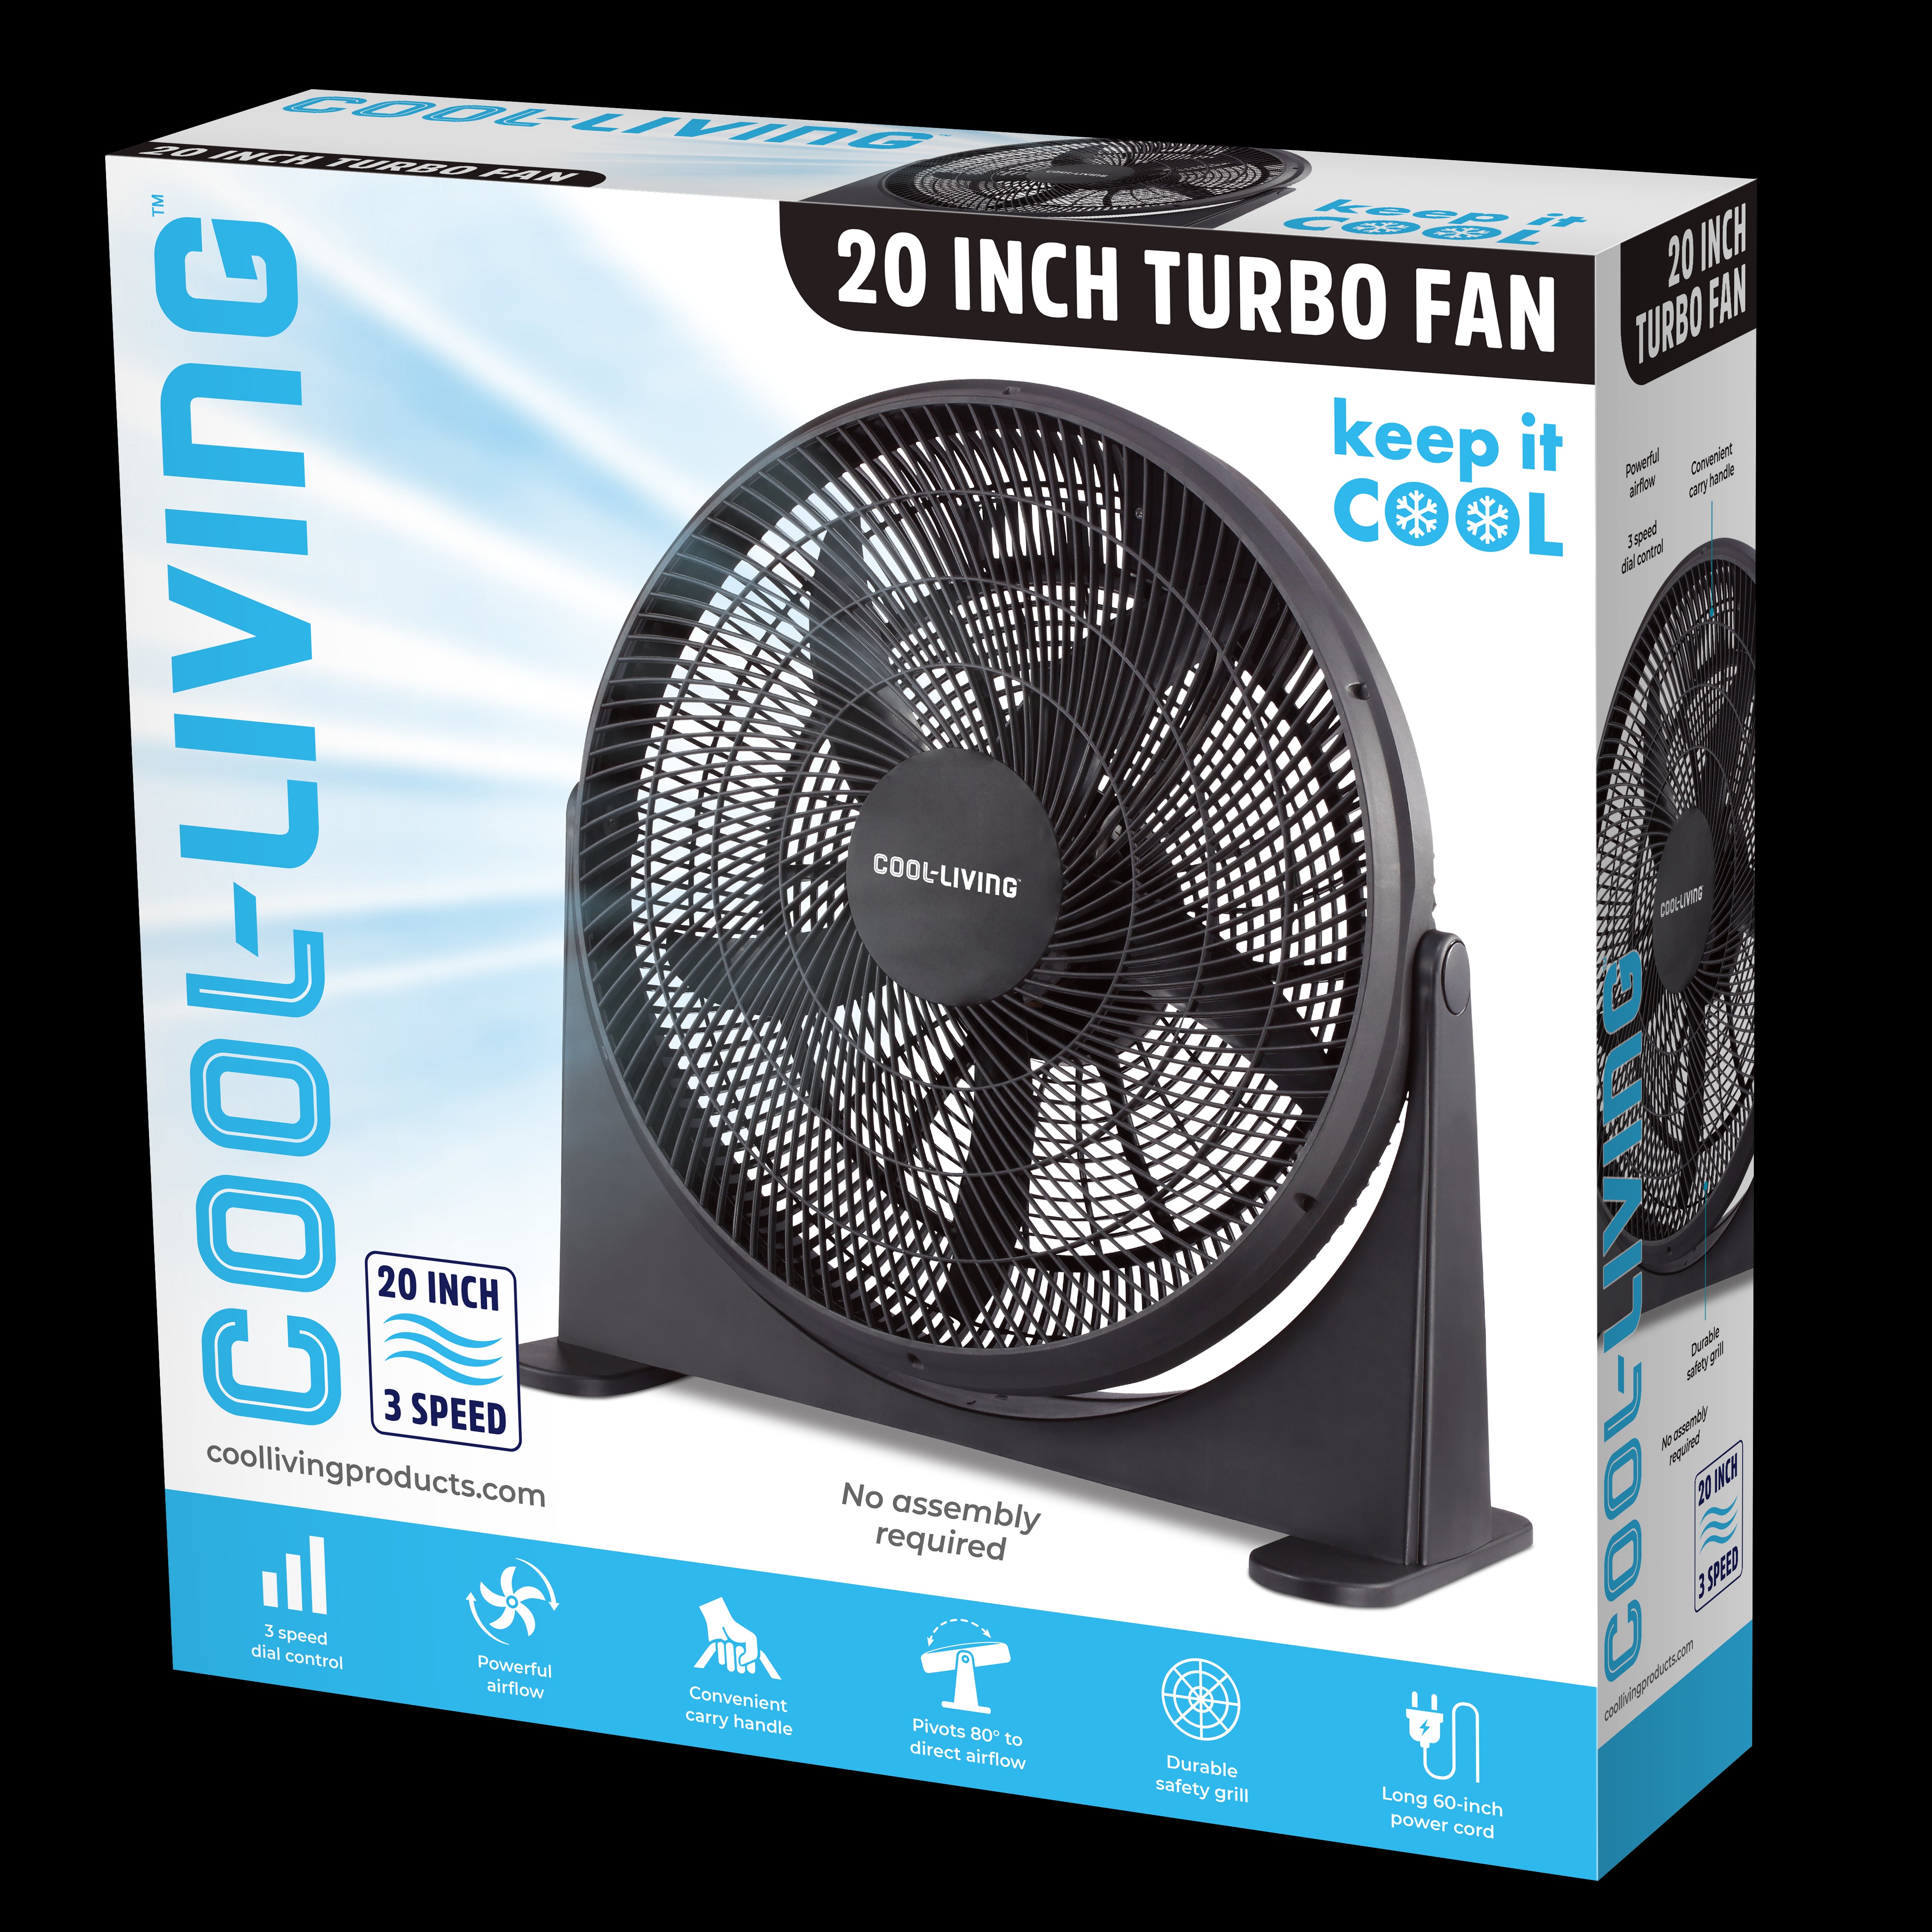 Cool Living 20-inch Turbo Fan, 3 Speed